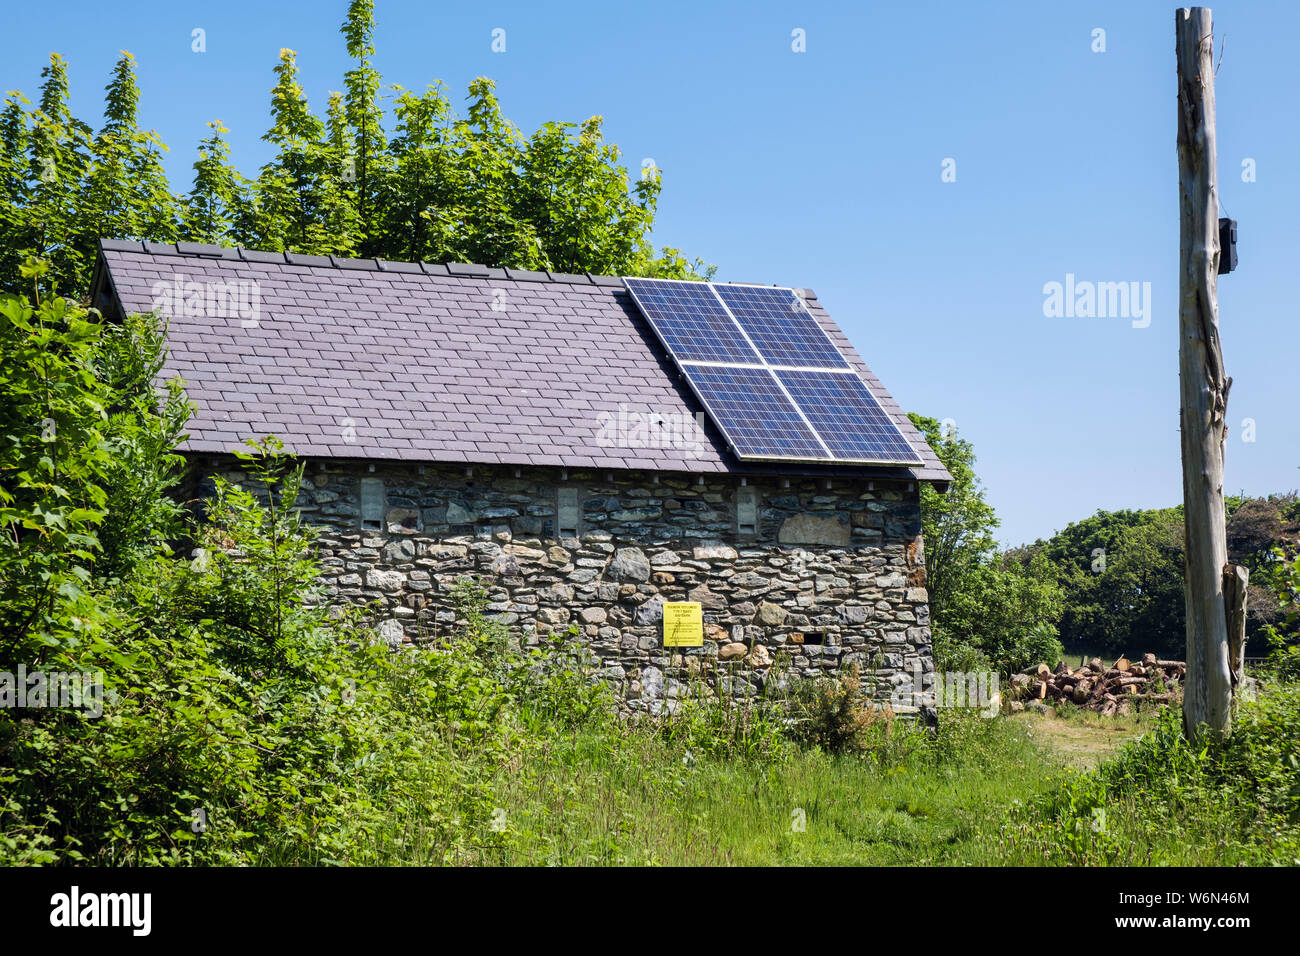 Panneaux solaires sur nouvelle grange bat pour les chauves-souris construit par Horizon Nuclear Power pour Newydd Wylfa. Cemaes Isle of Anglesey Pays de Galles Royaume-uni Grande-Bretagne Banque D'Images